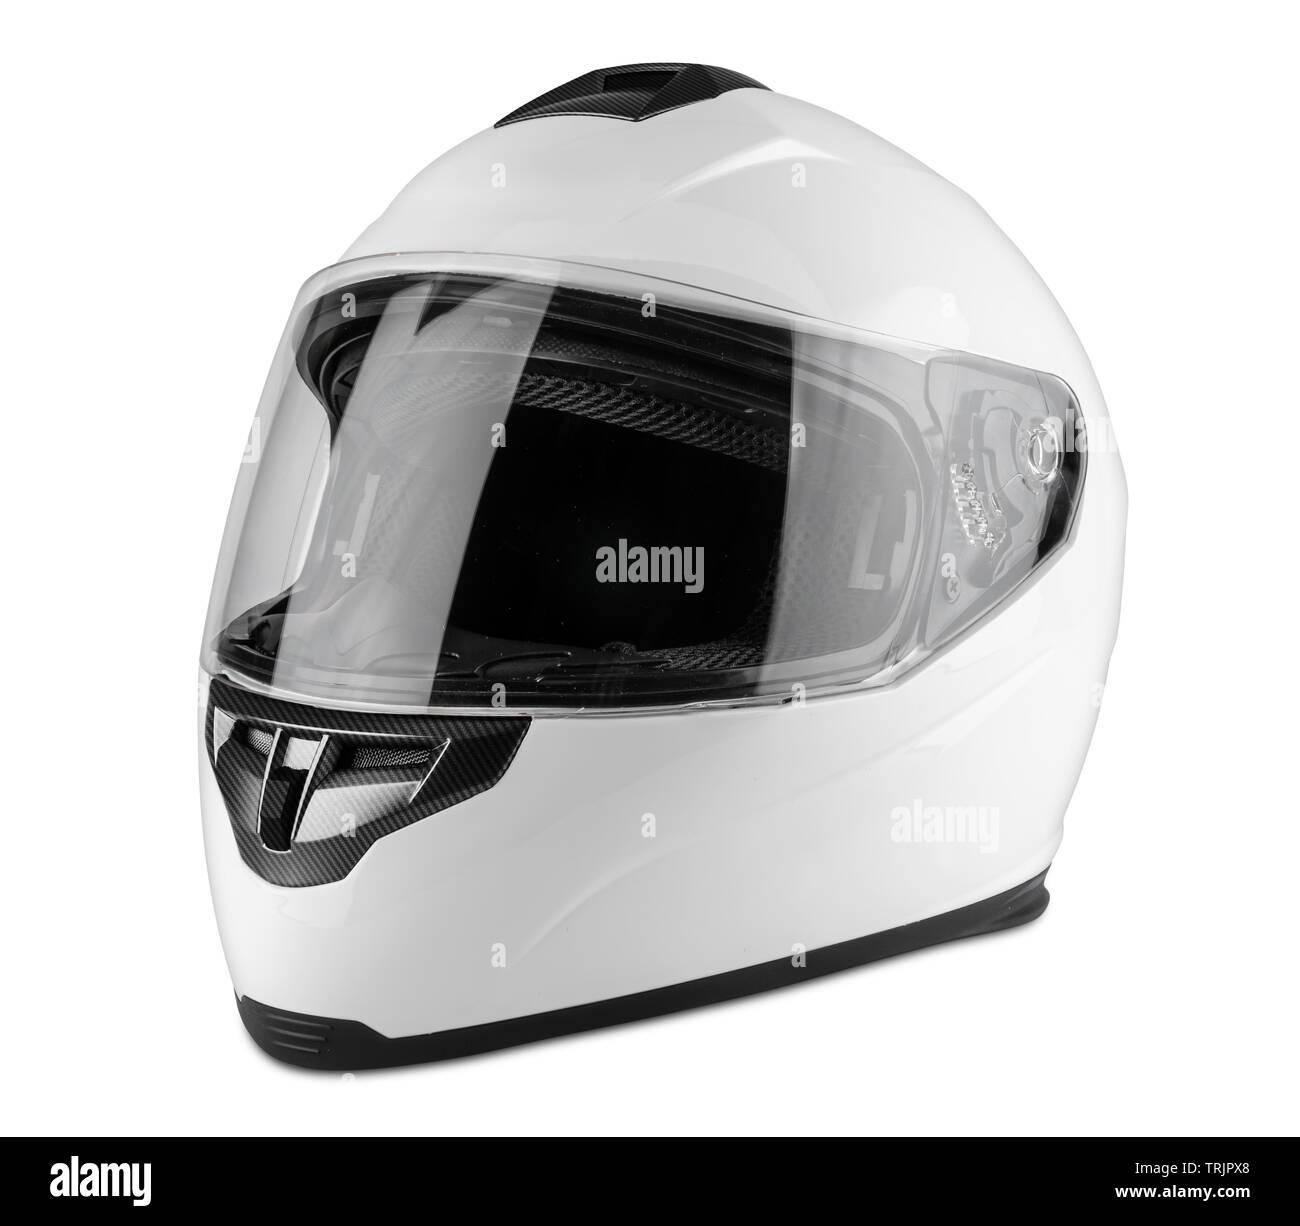 Moto blanc casque intégral carbone isolé sur fond blanc. motorsport car kart racing concept de la sécurité des transports Banque D'Images